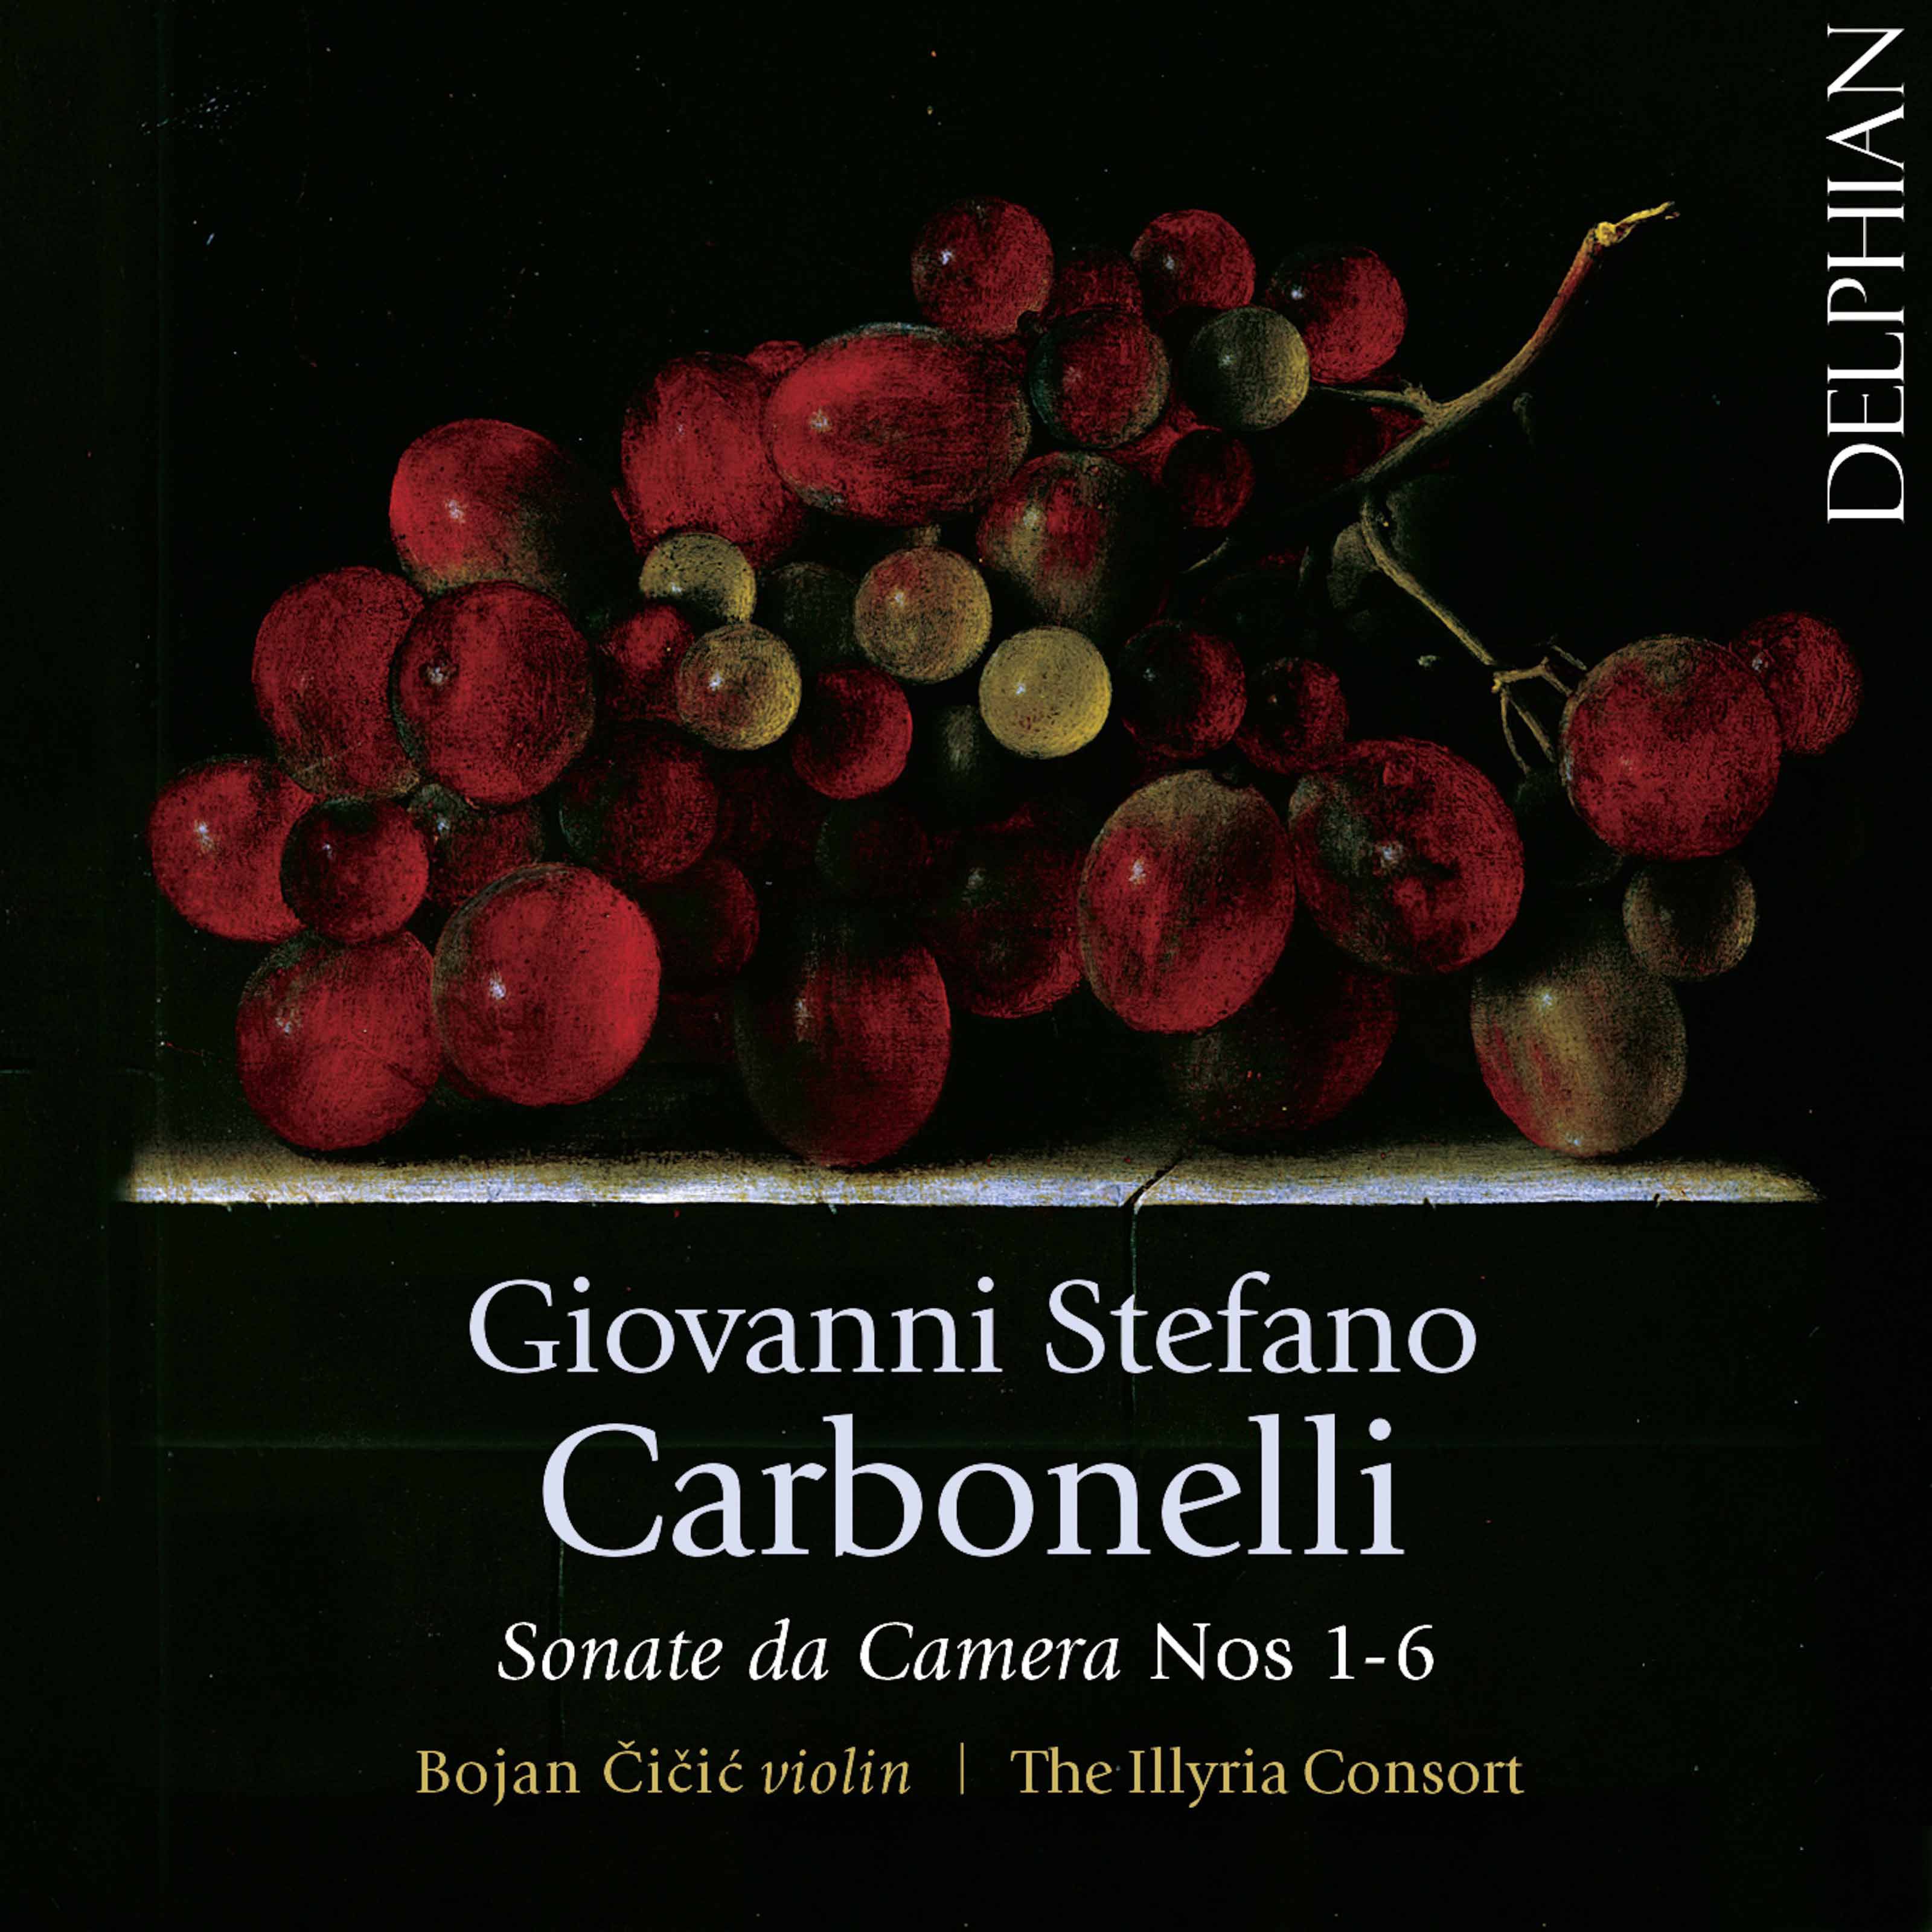 Bojan Cicic & The Illyria Consort - Carbonelli: Sonate da camera, Nos. 1-6 (2017) [Qobuz FLAC 24bit/48kHz]